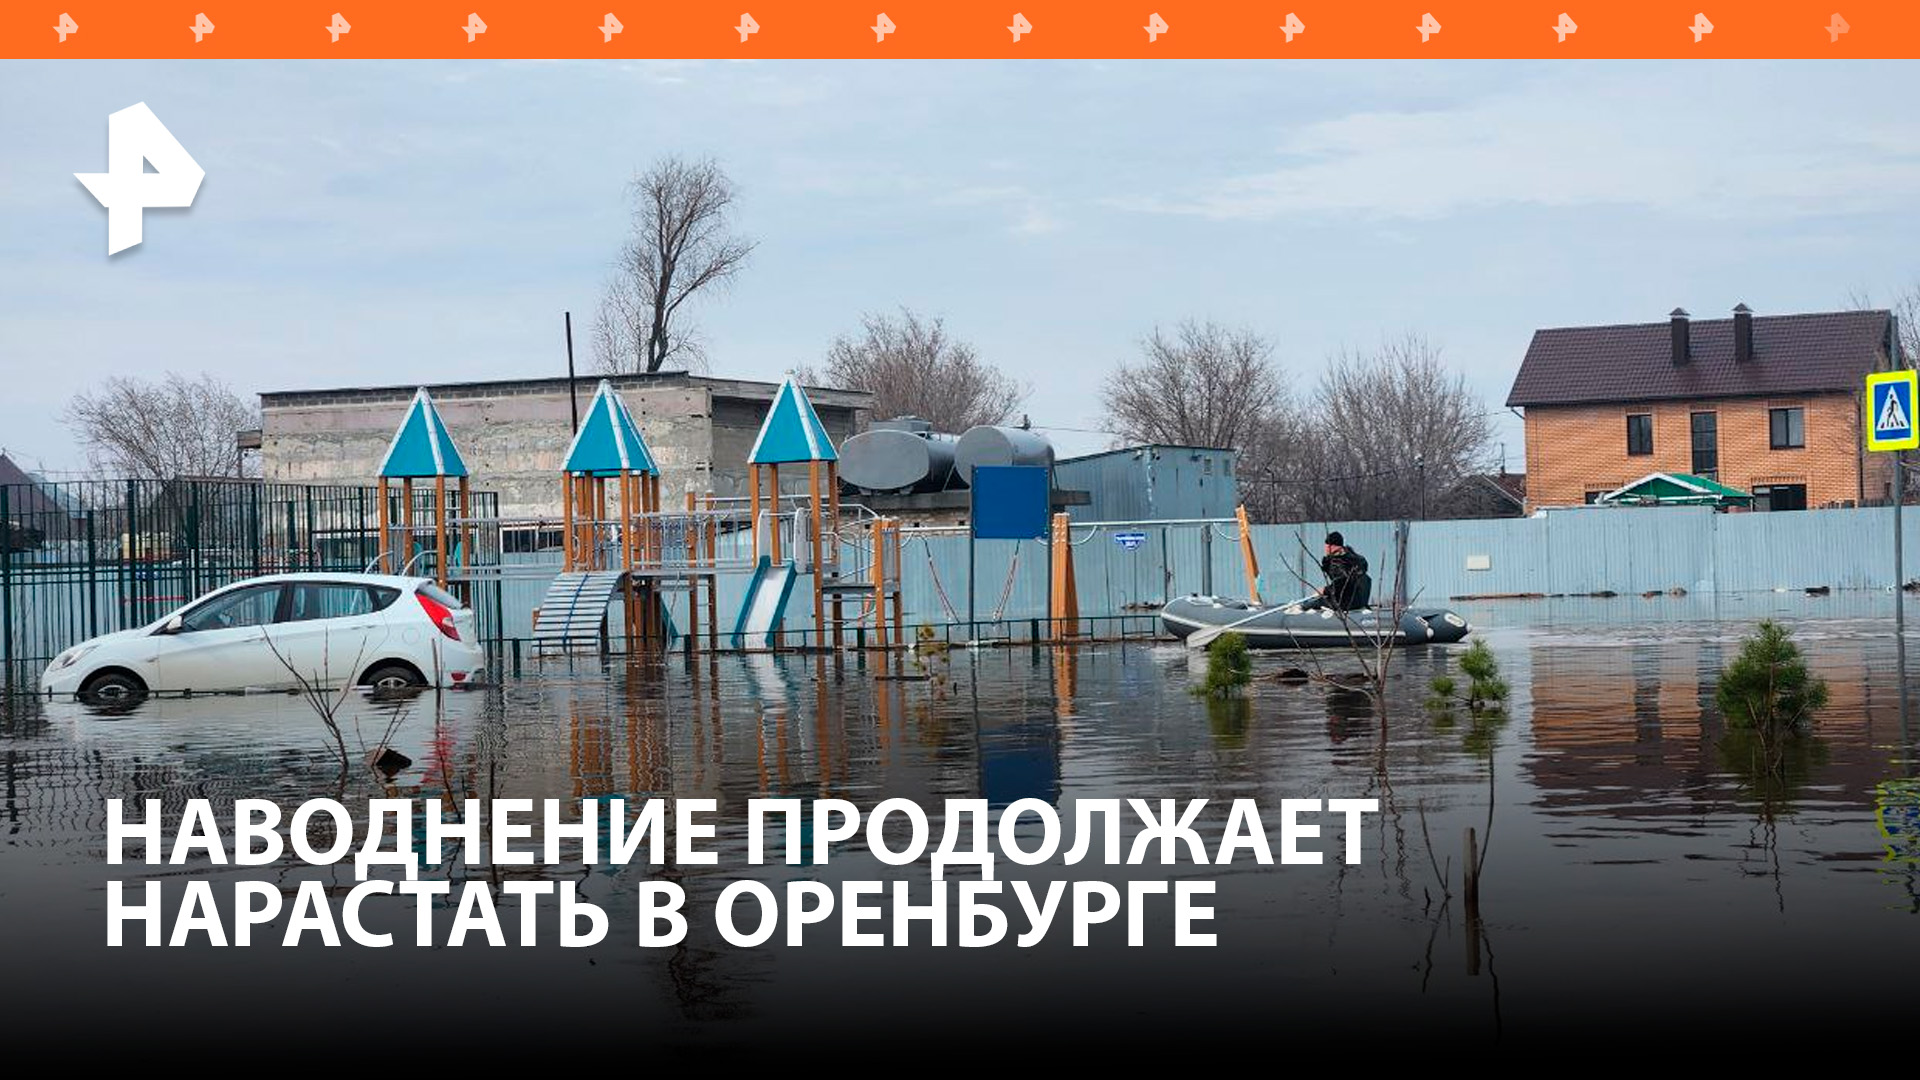 Уровень воды растет: жители Оренбурга покидают дома из-за паводка / РЕН Новости